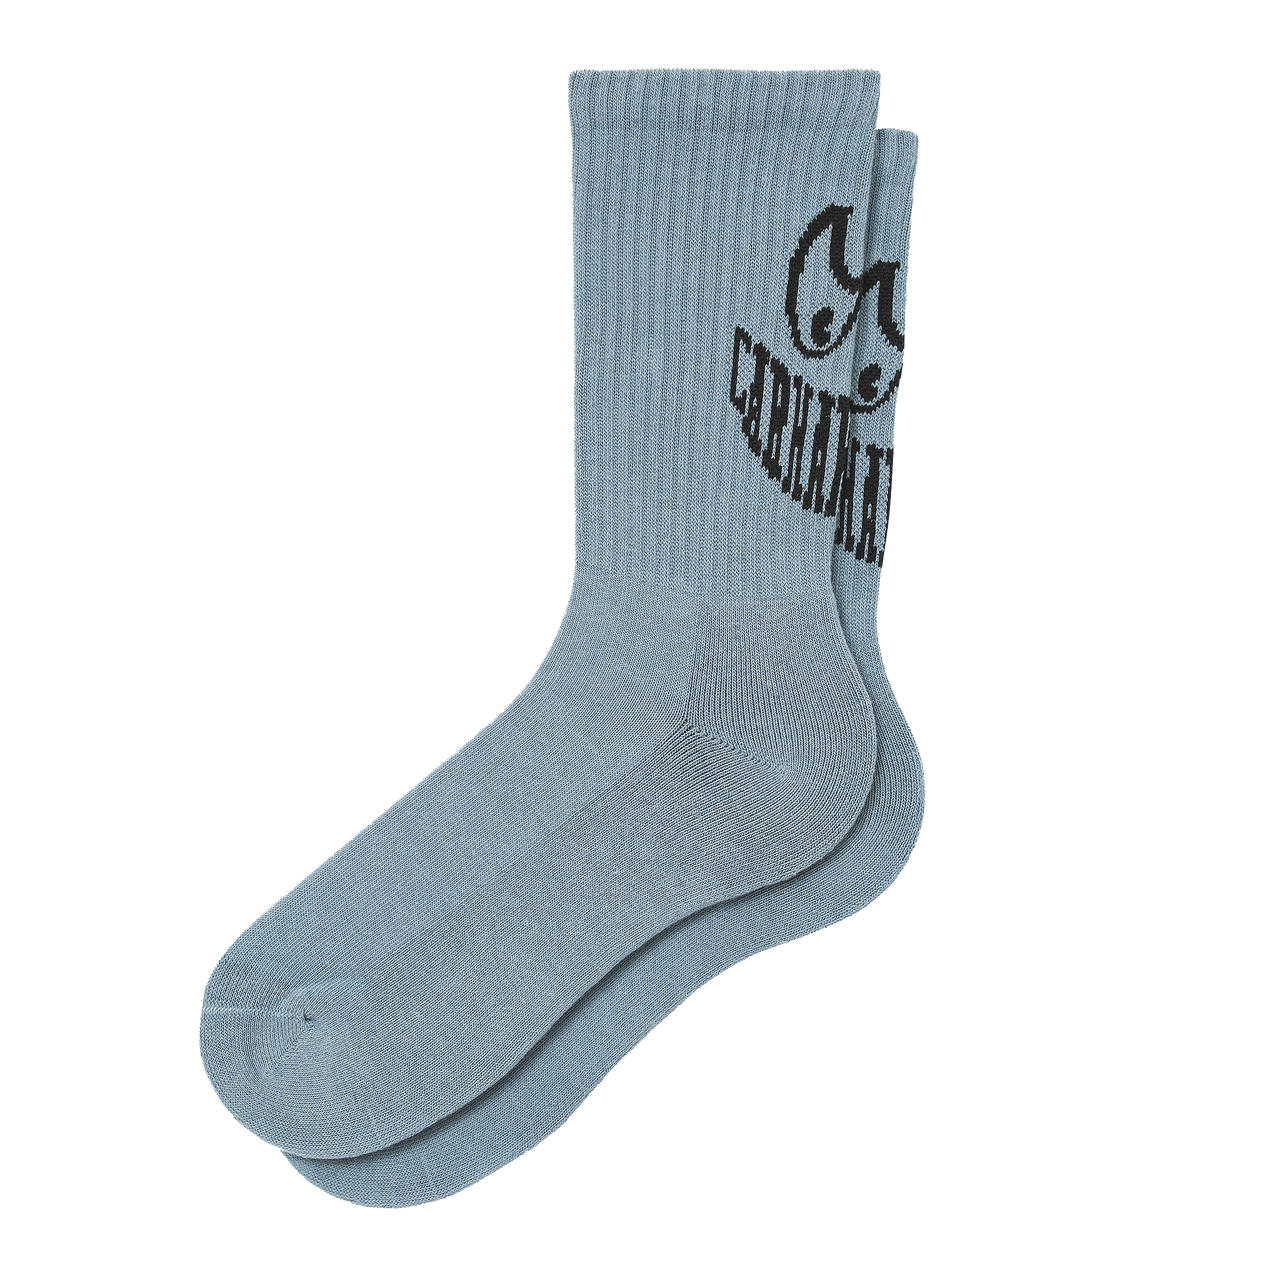 Grin Socks Frosted Blue / Black